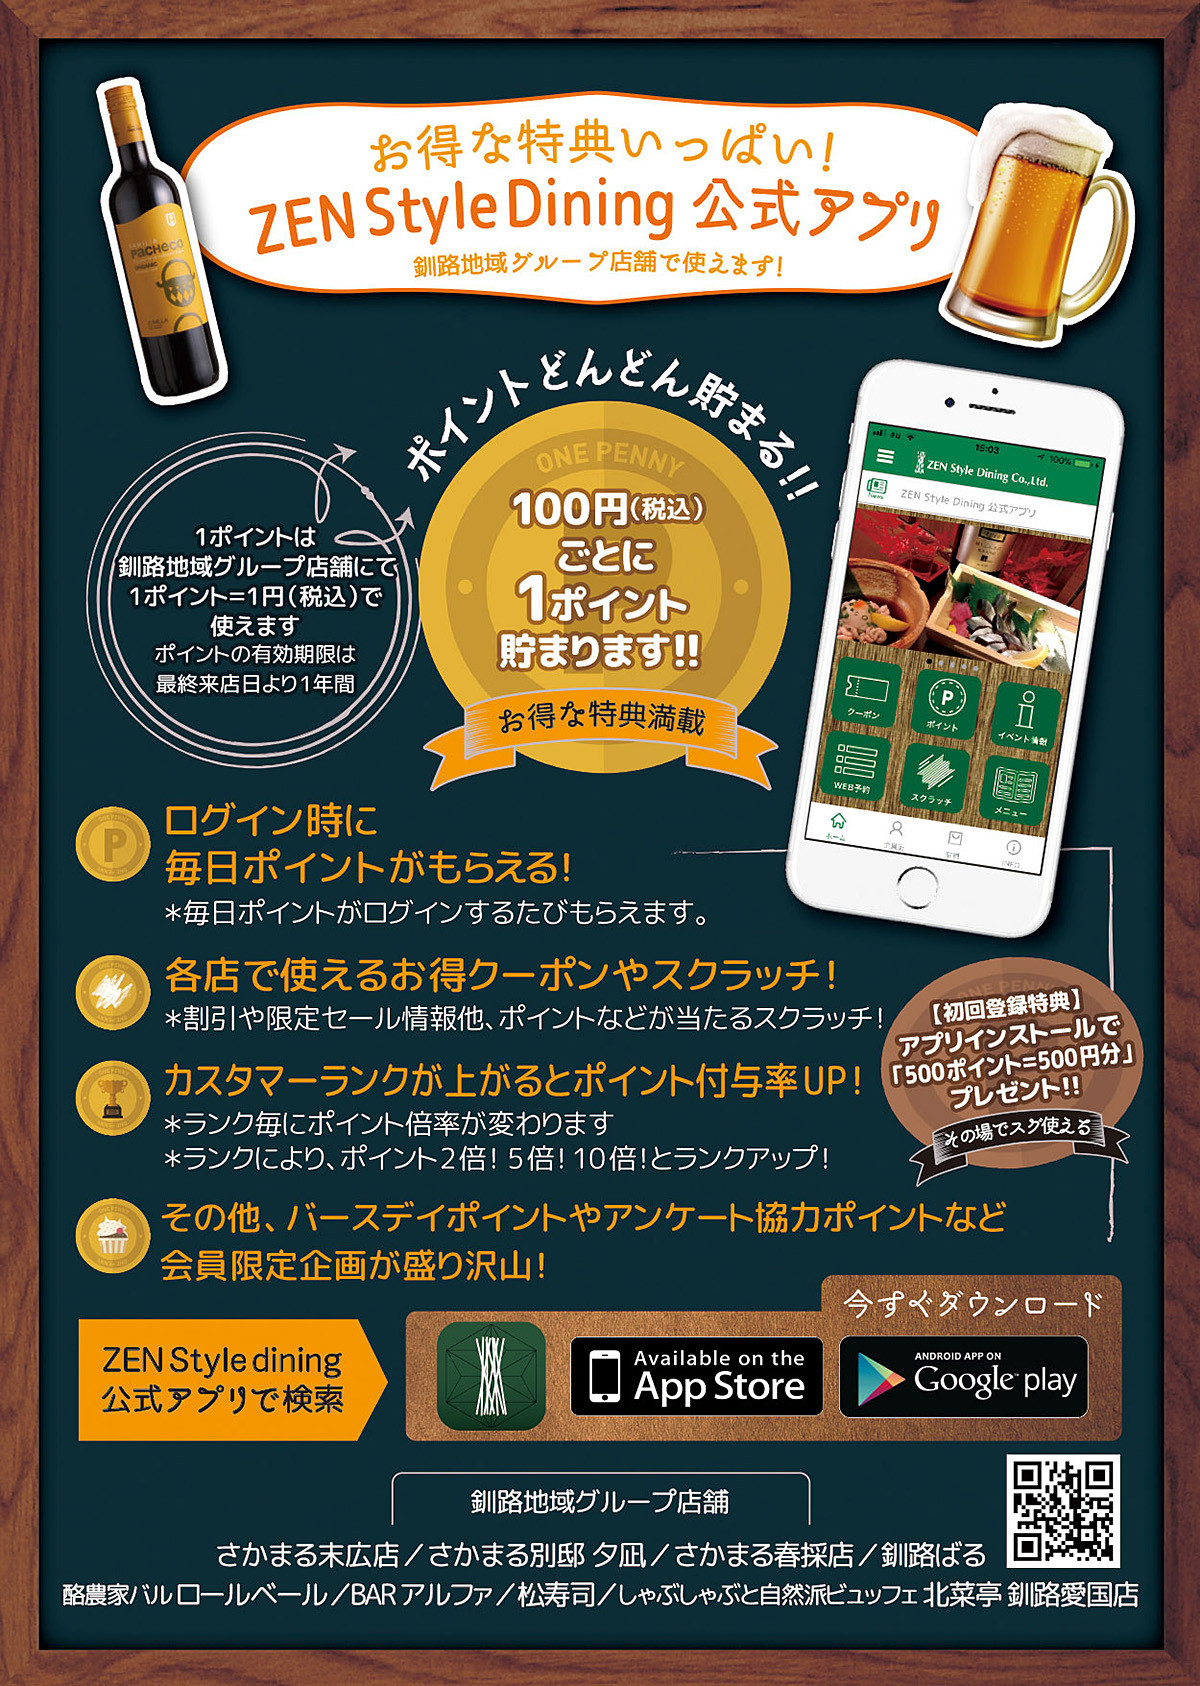 ポイントが貯まる使える オリジナルアプリ運用開始のお知らせ 釧路で居酒屋を展開 宴会対応可能 Zen Style Dining 公式ホームぺージ